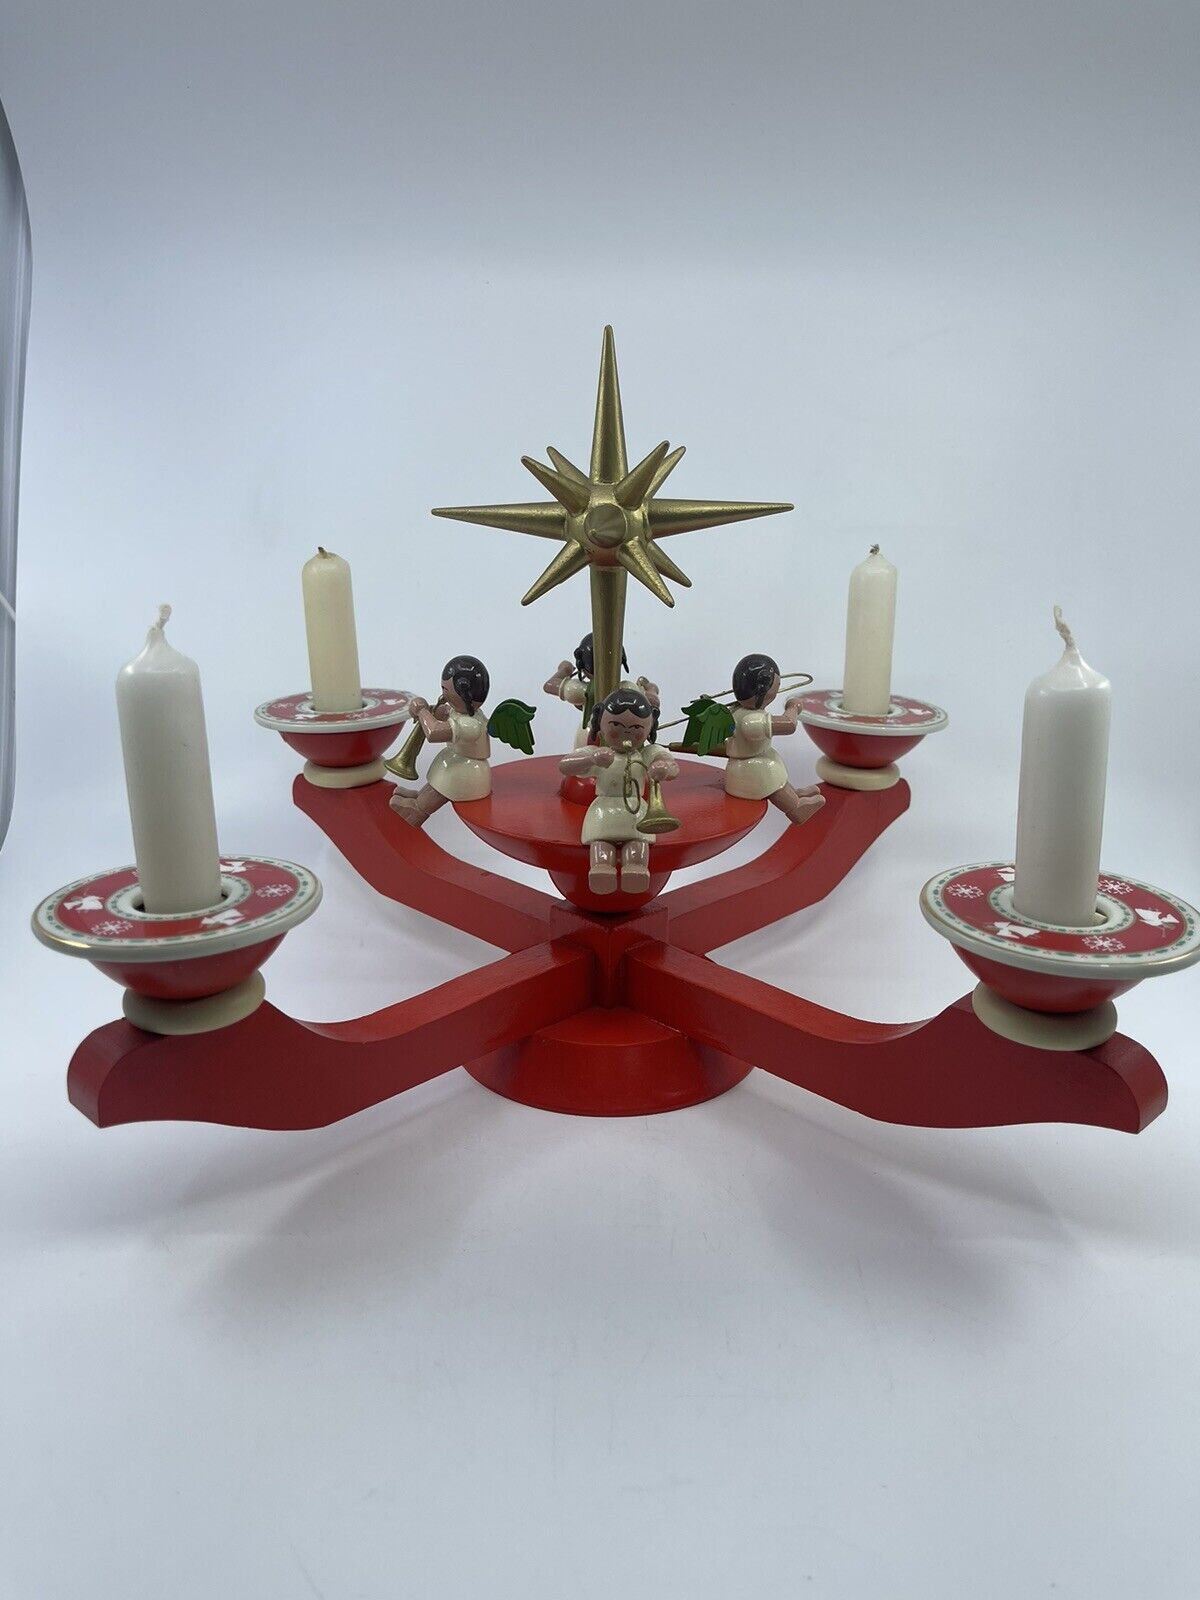 VTG Erzgebirge Germany Advent Angel Candle Holder Rare Ceramic Complete